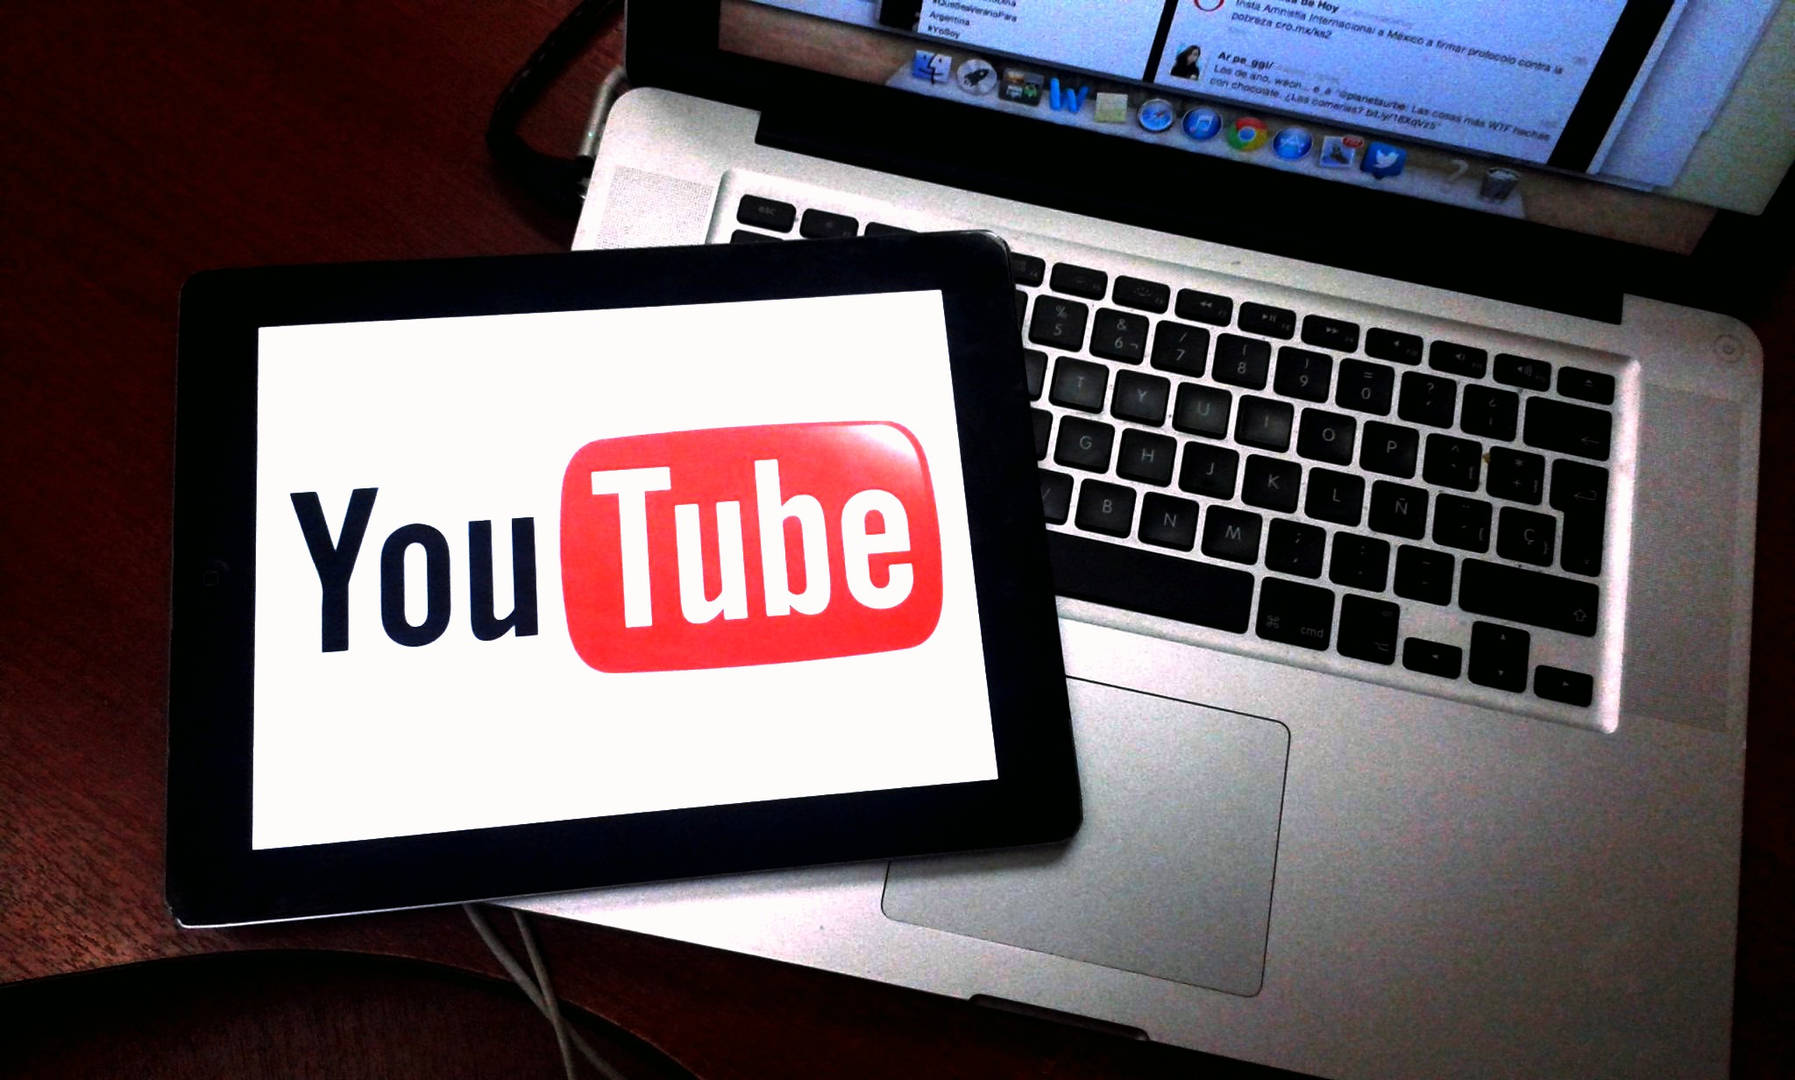 En este momento estás viendo “YouTuber”, una nueva actividad empresarial. ¿Qué gastos son fiscalmente deducibles?